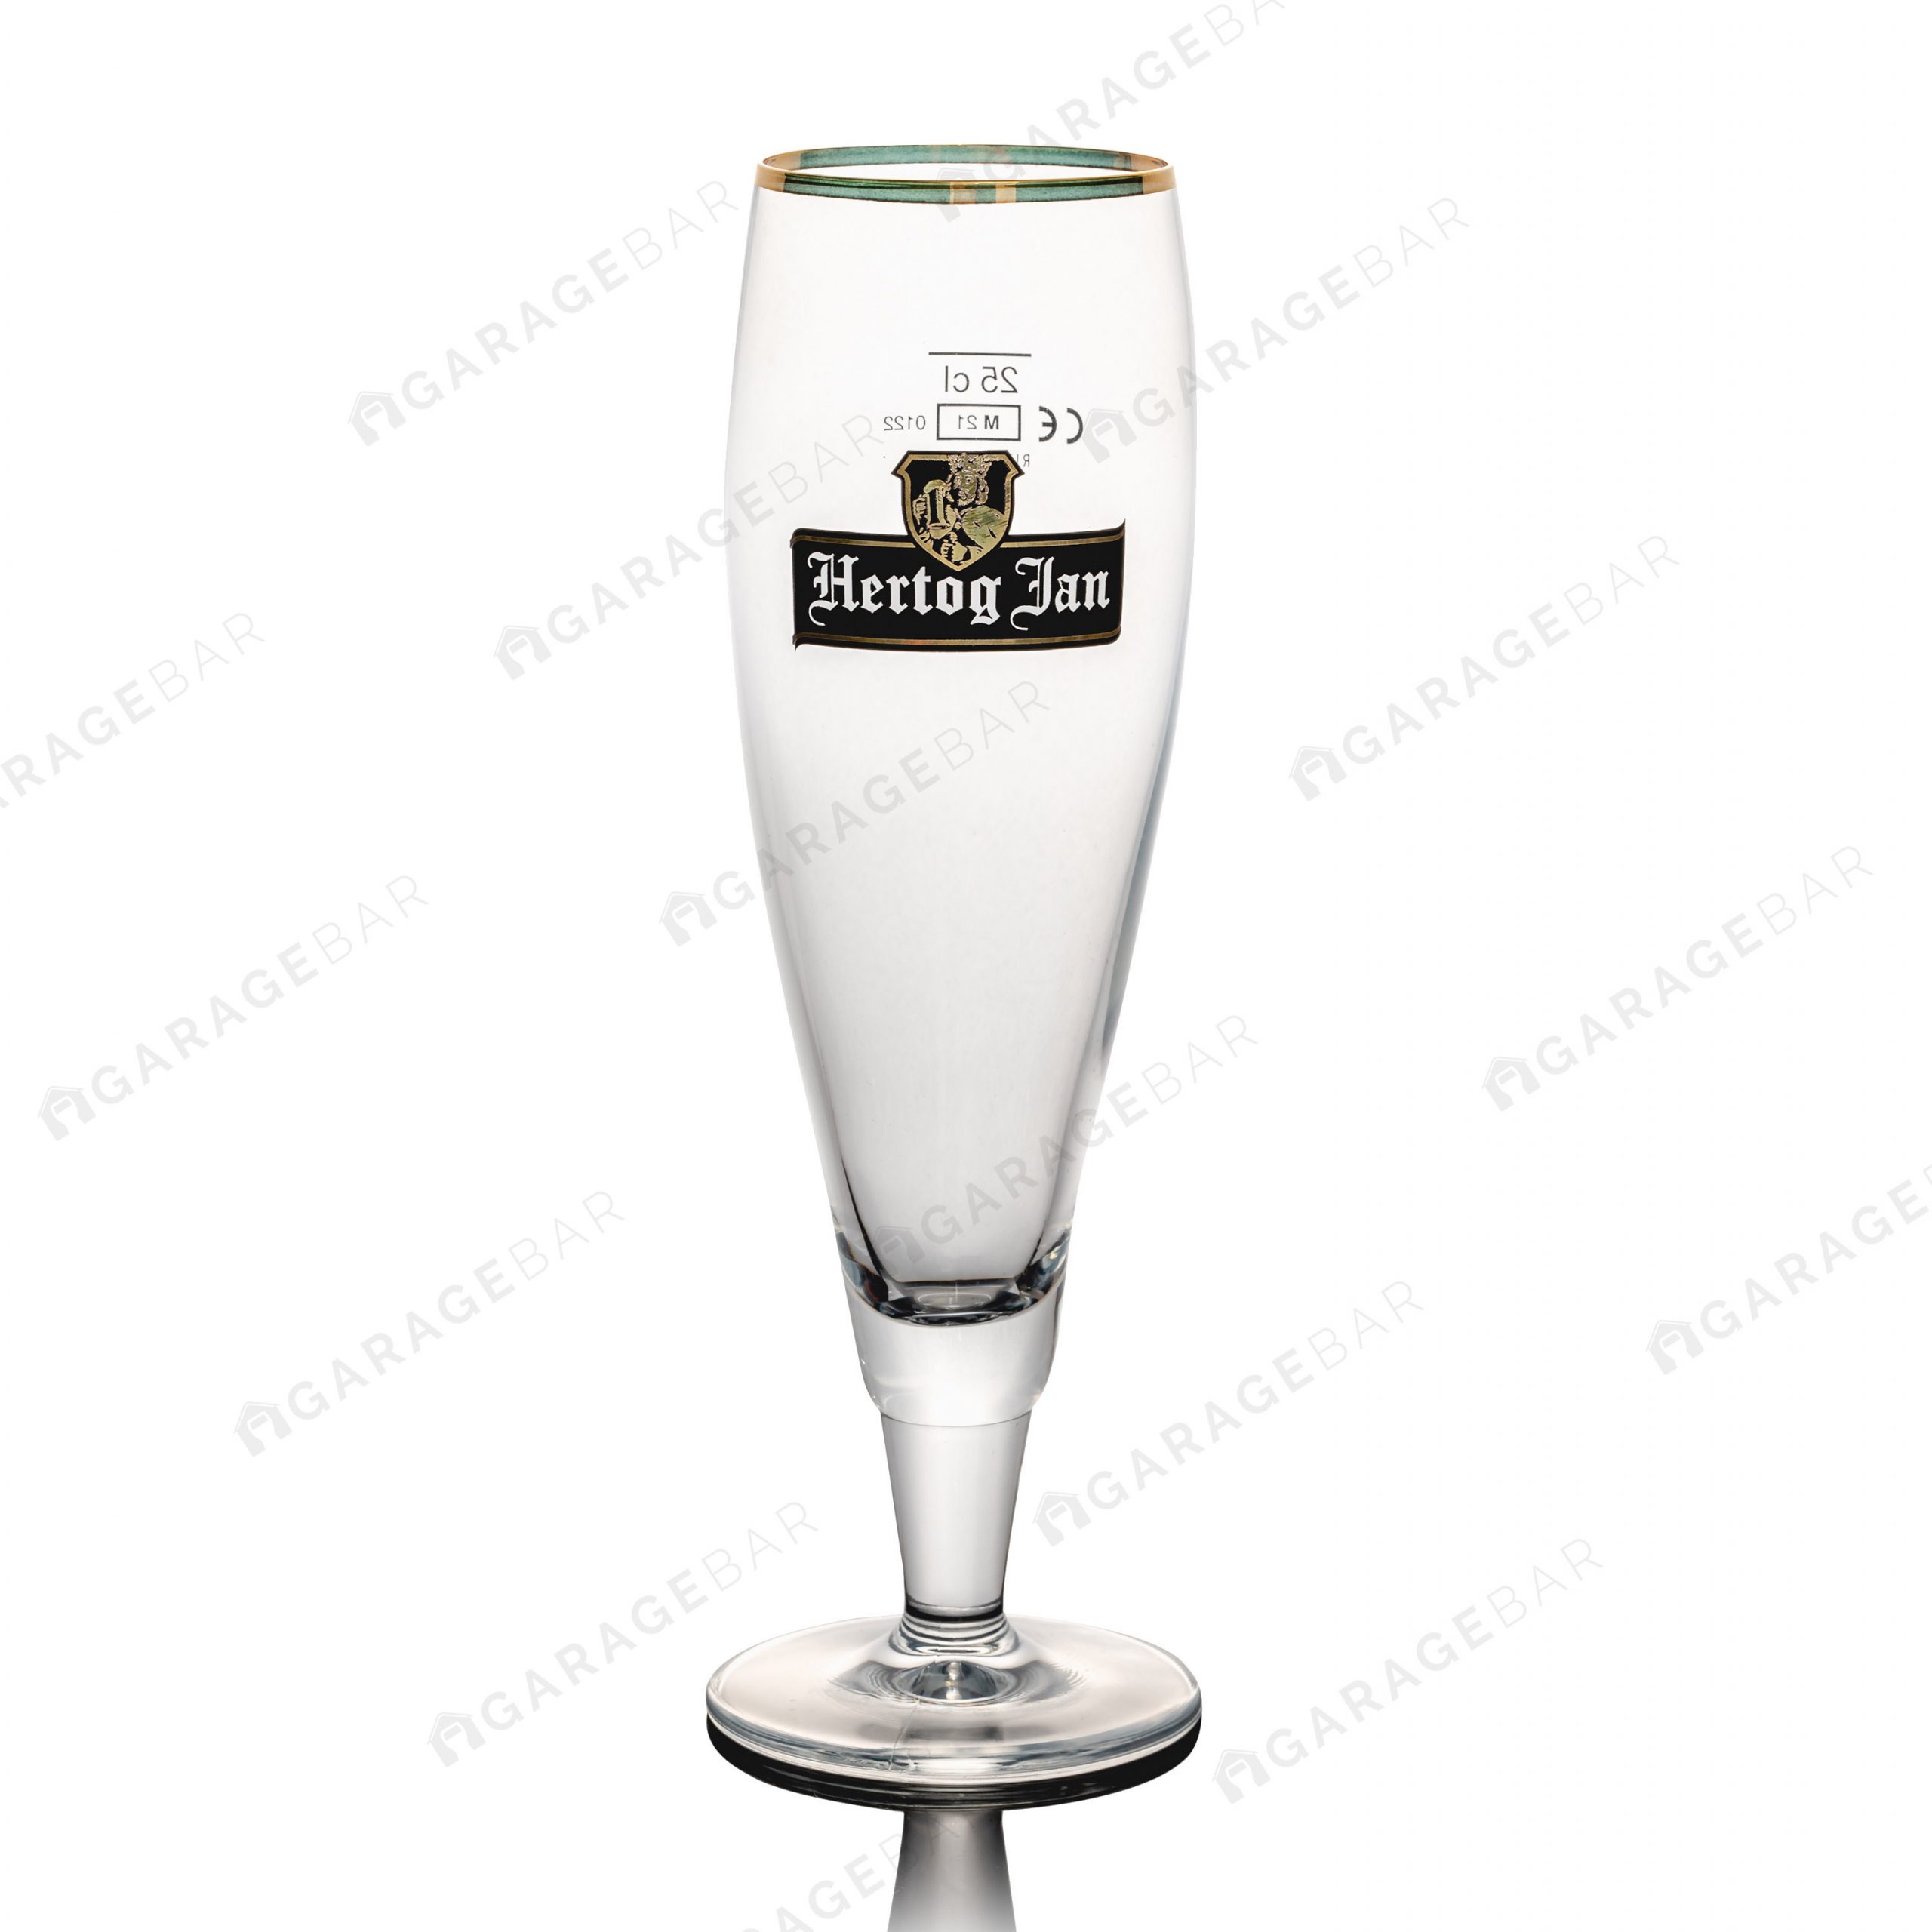 Hertog Jan Flute Beer Glass